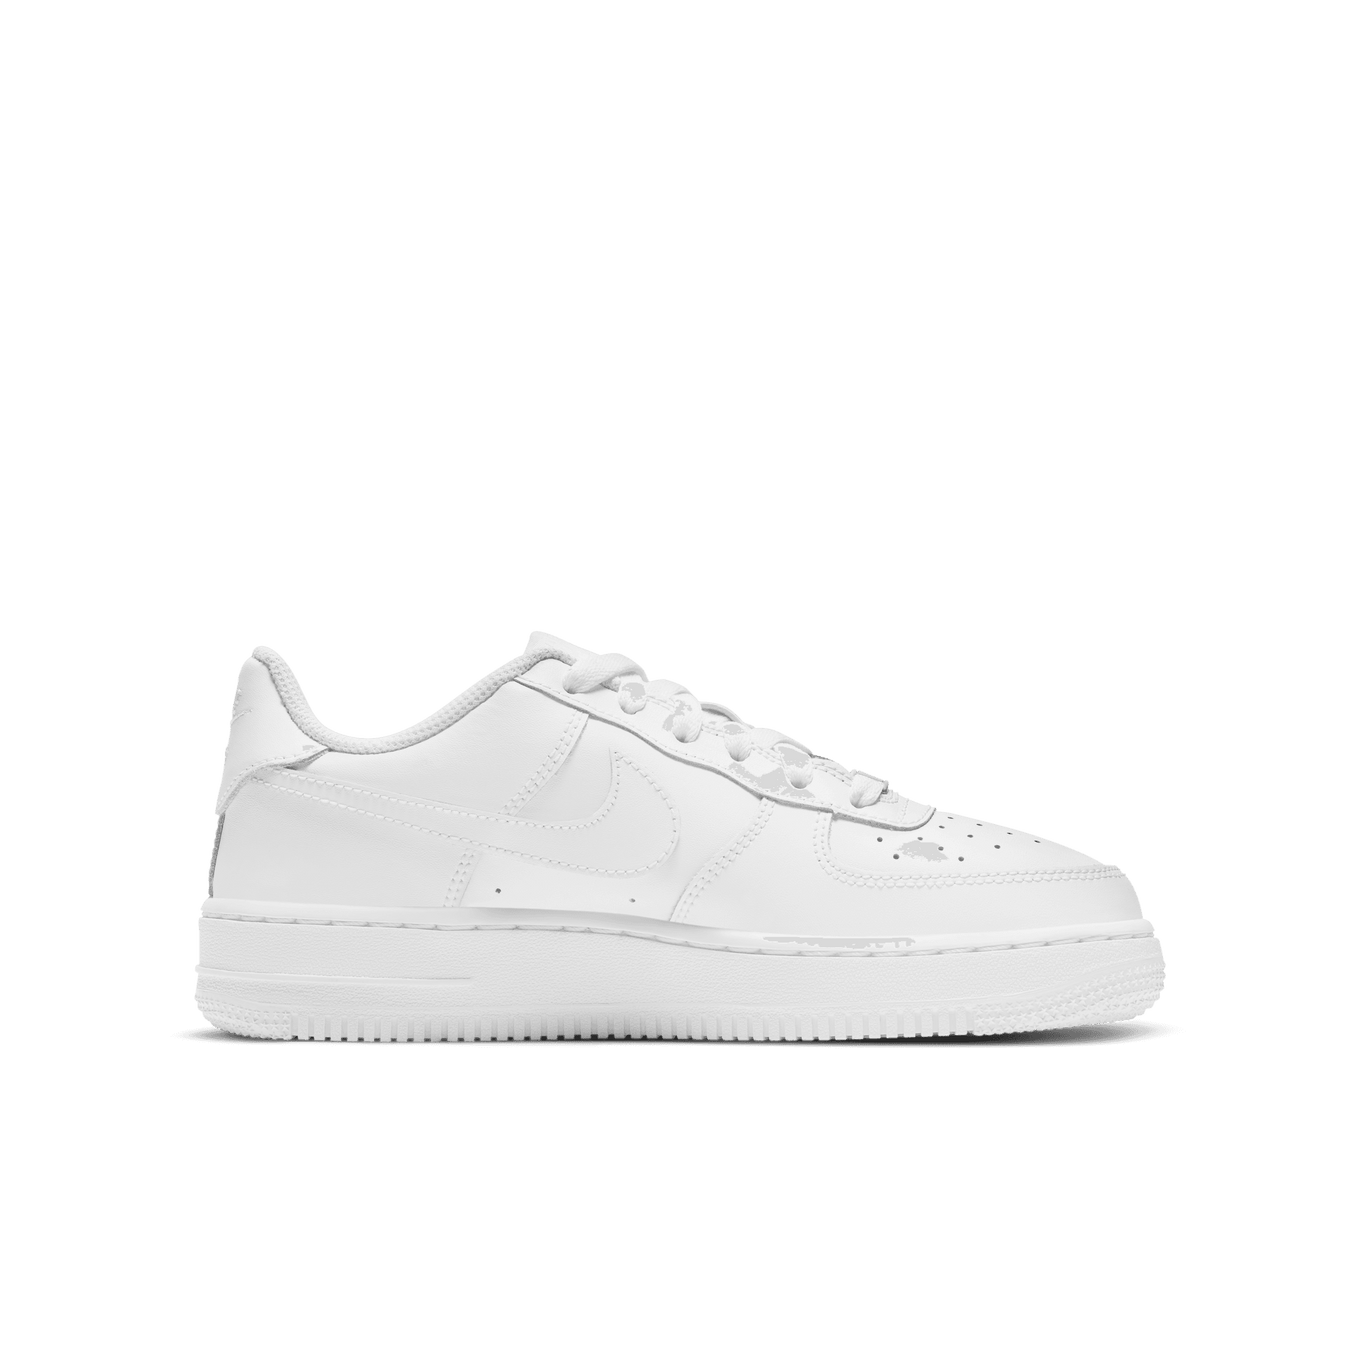 Nike Air Force 1 Le GS 'Triple White